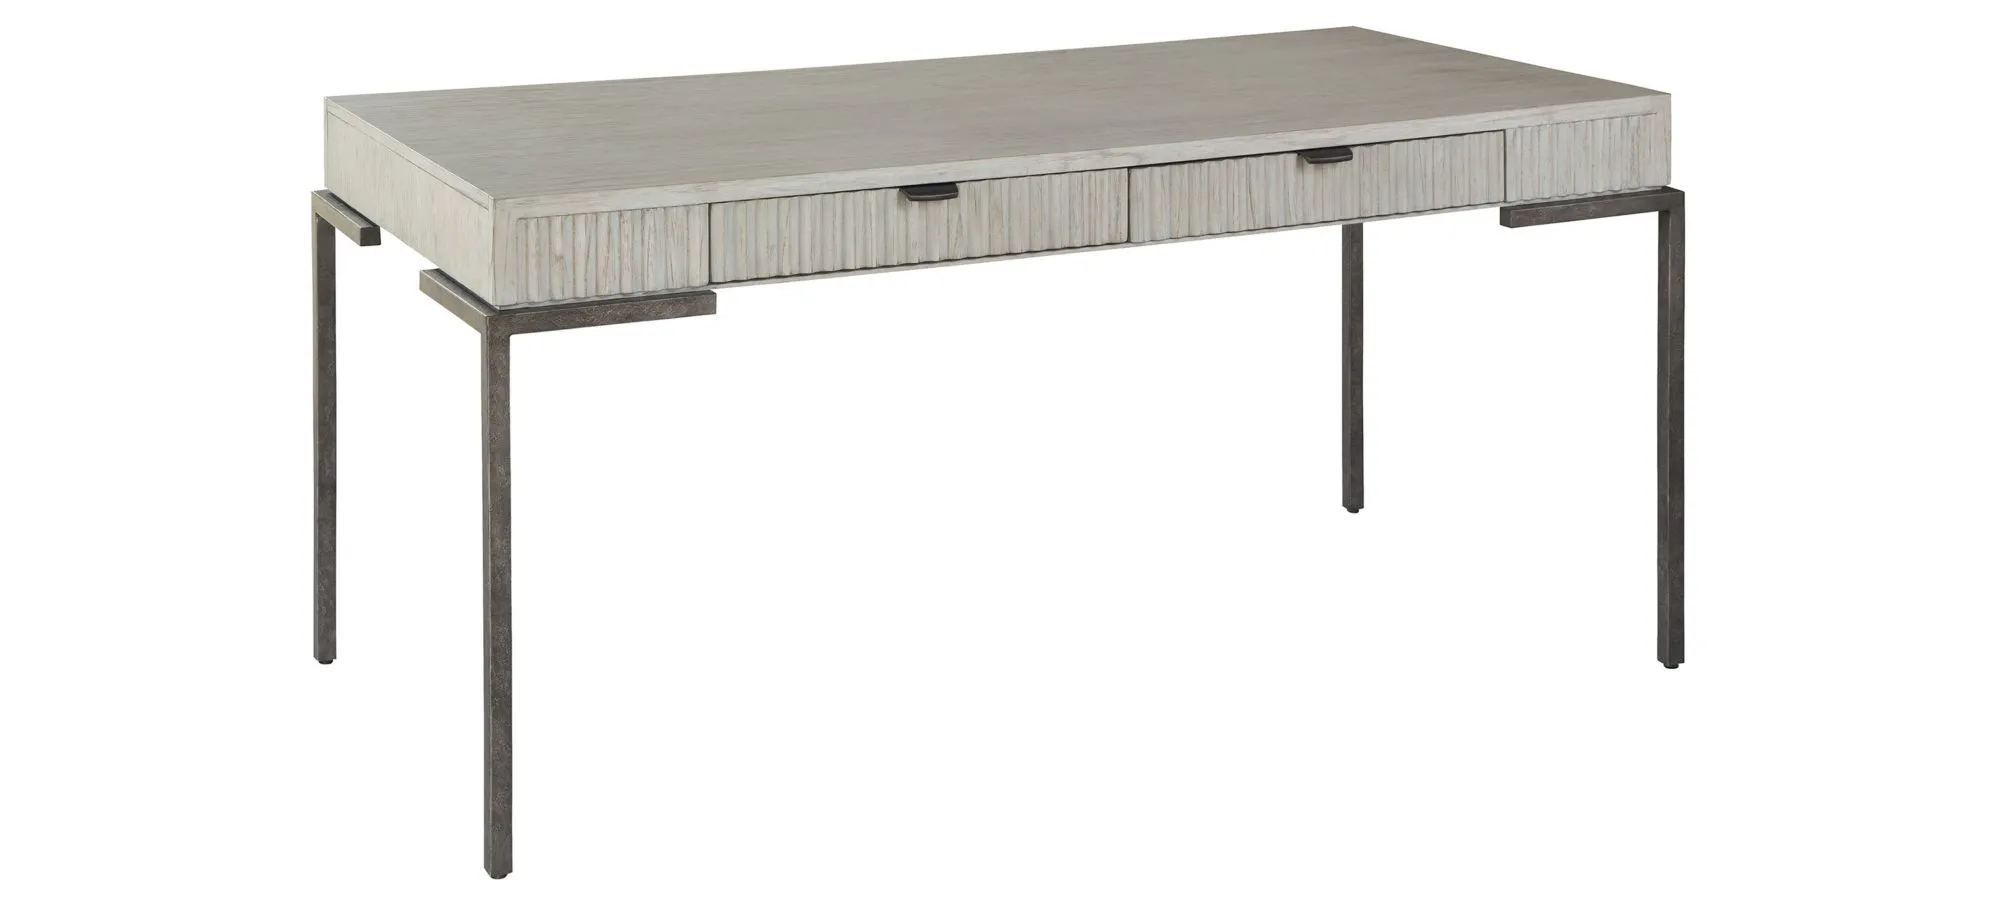 Hekman Desk in SIERRA HEIGHTS by Hekman Furniture Company